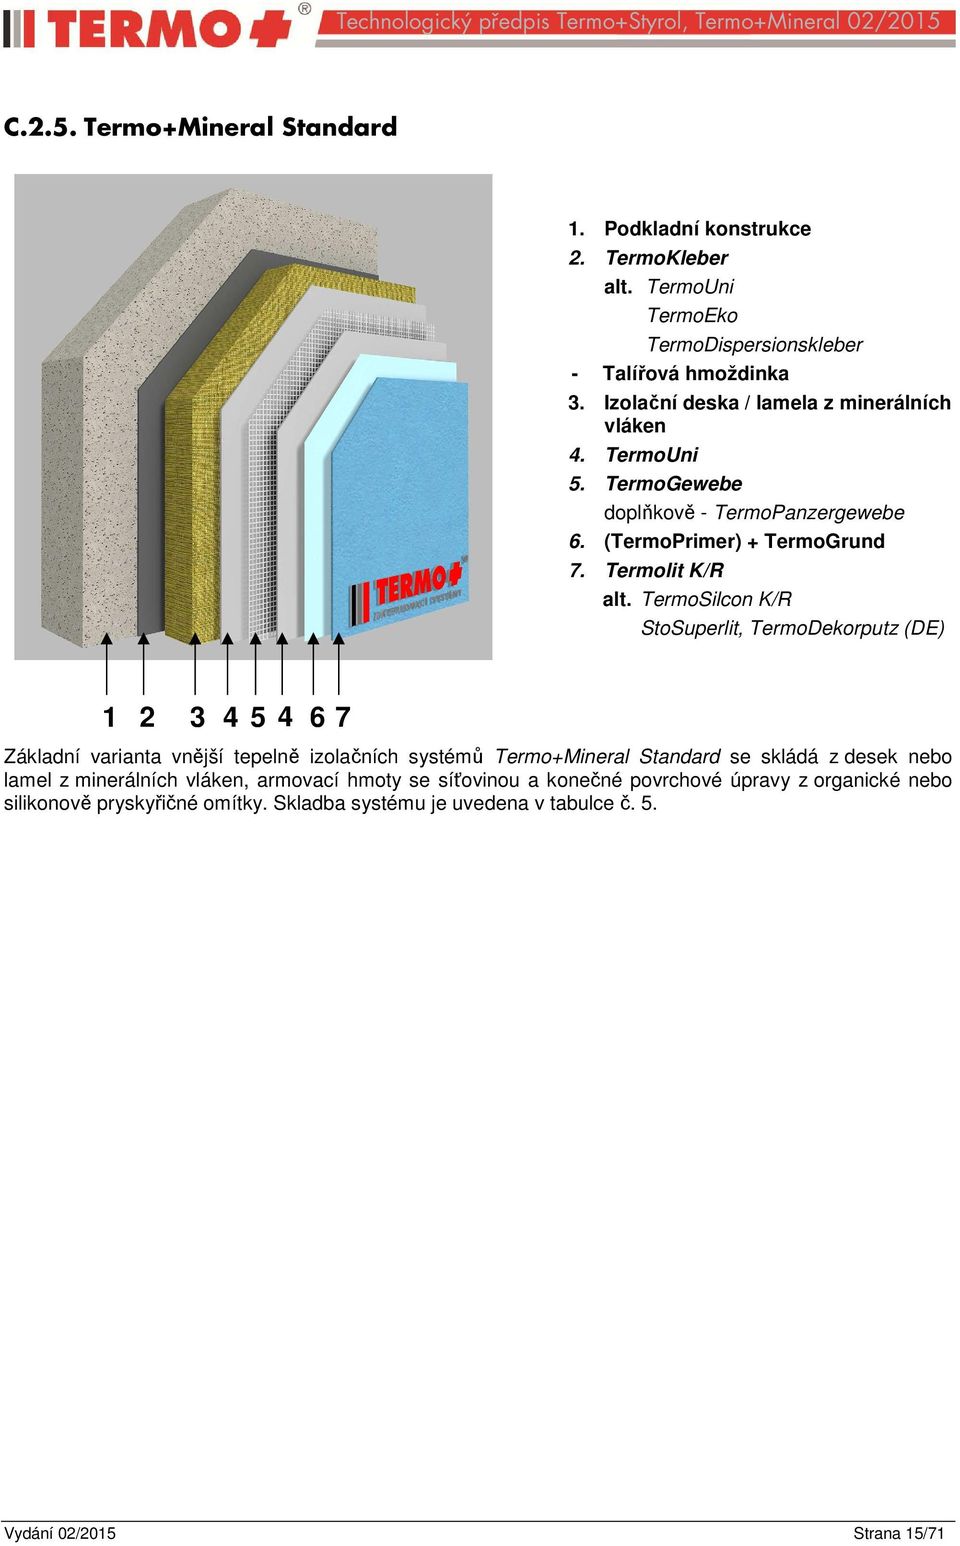 TermoSilcon K/R StoSuperlit, TermoDekorputz (DE) 1 2 3 4 5 4 6 7 Základní varianta vnější tepelně izolačních systémů Termo+Mineral Standard se skládá z desek nebo